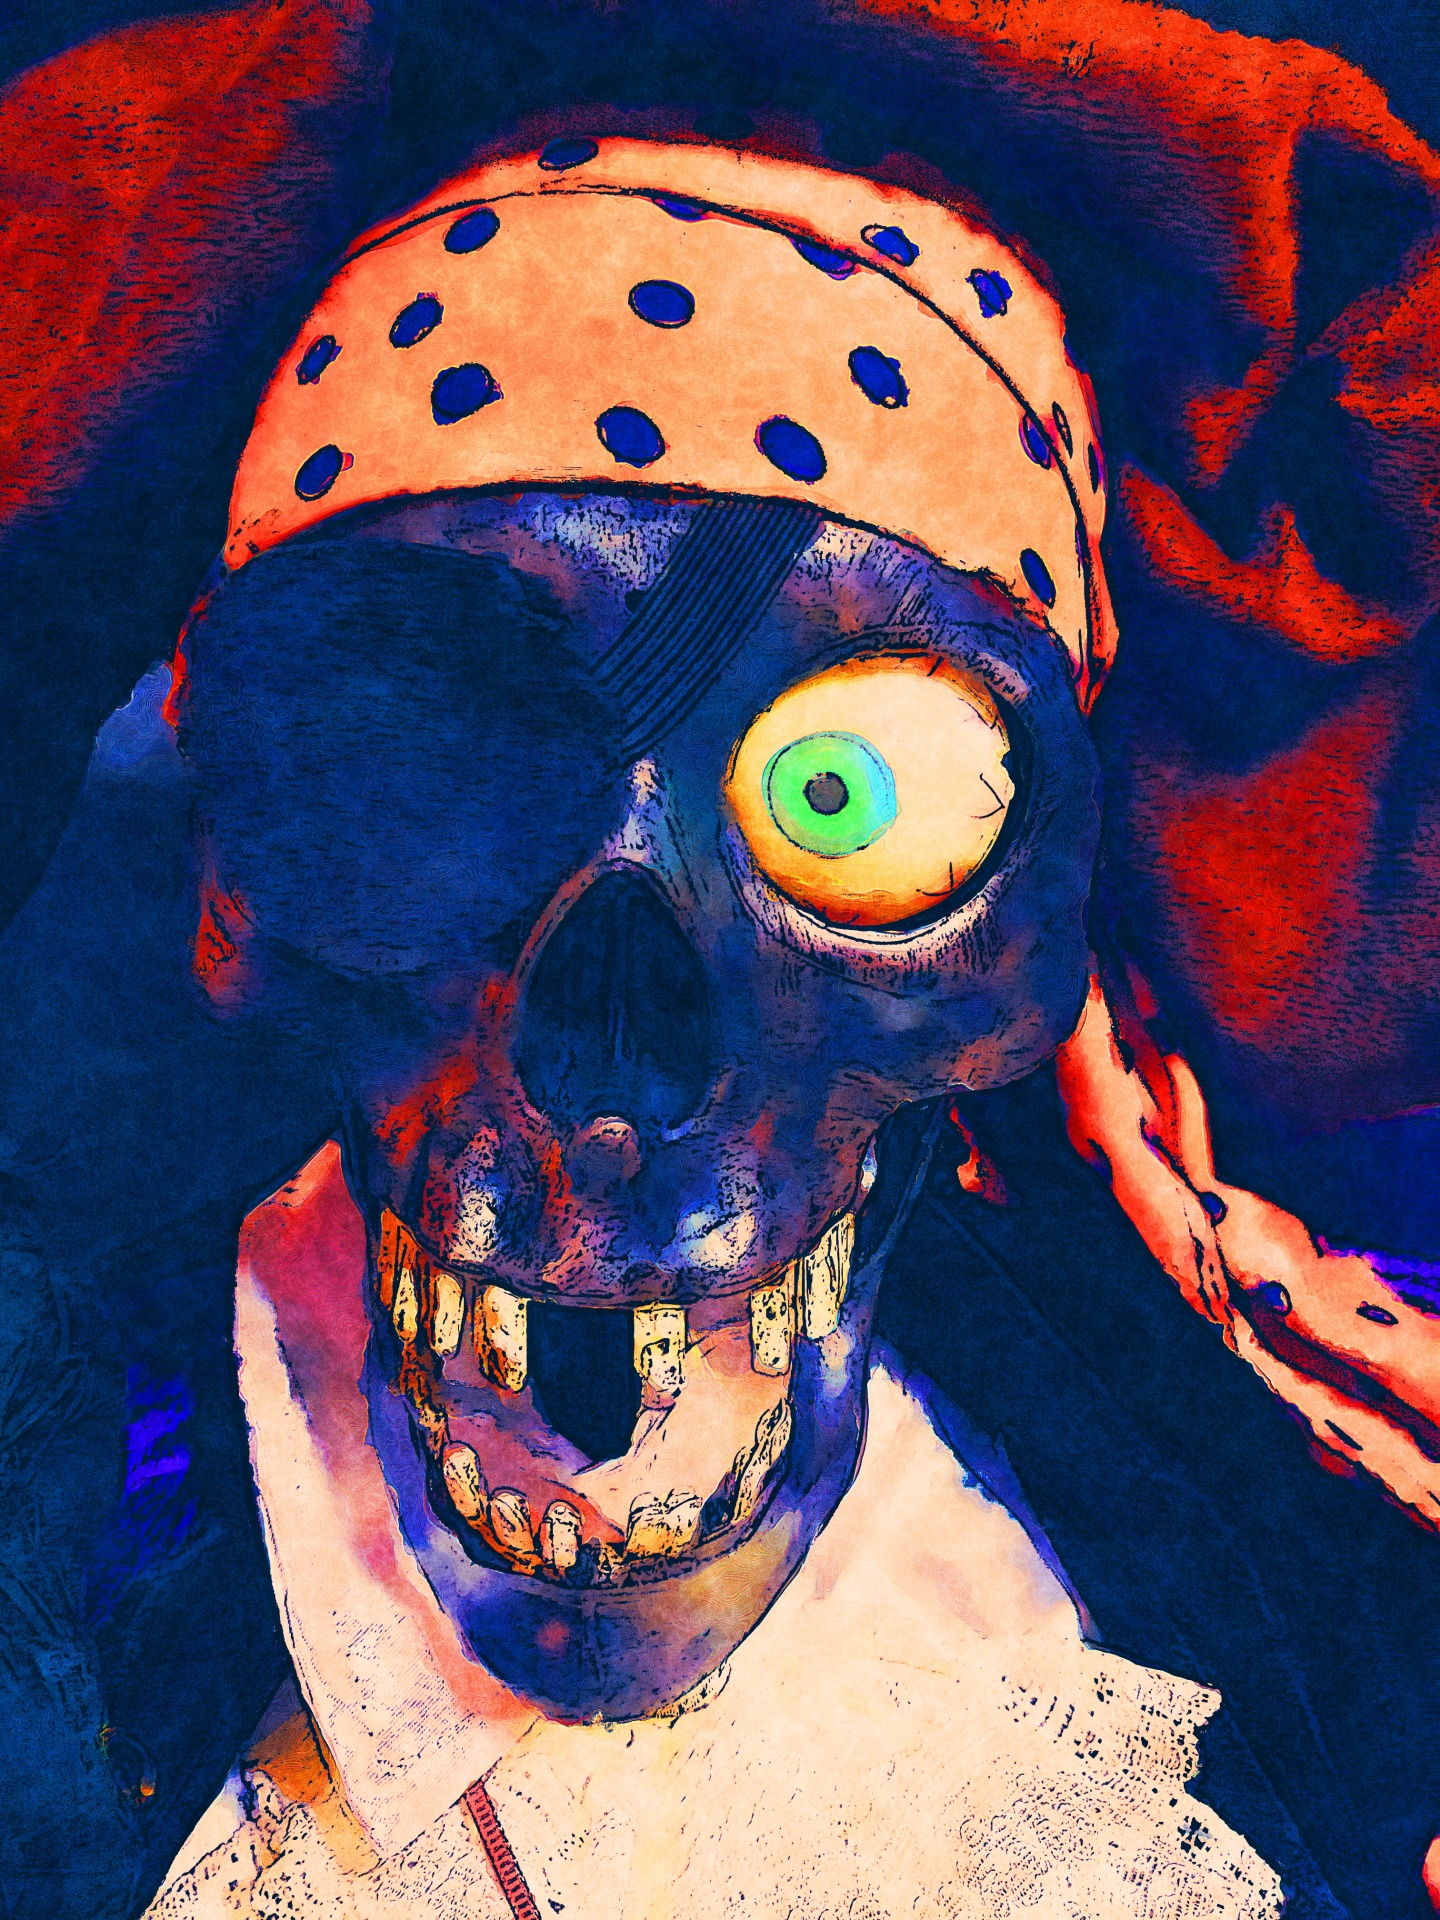 Esqueleto pirata